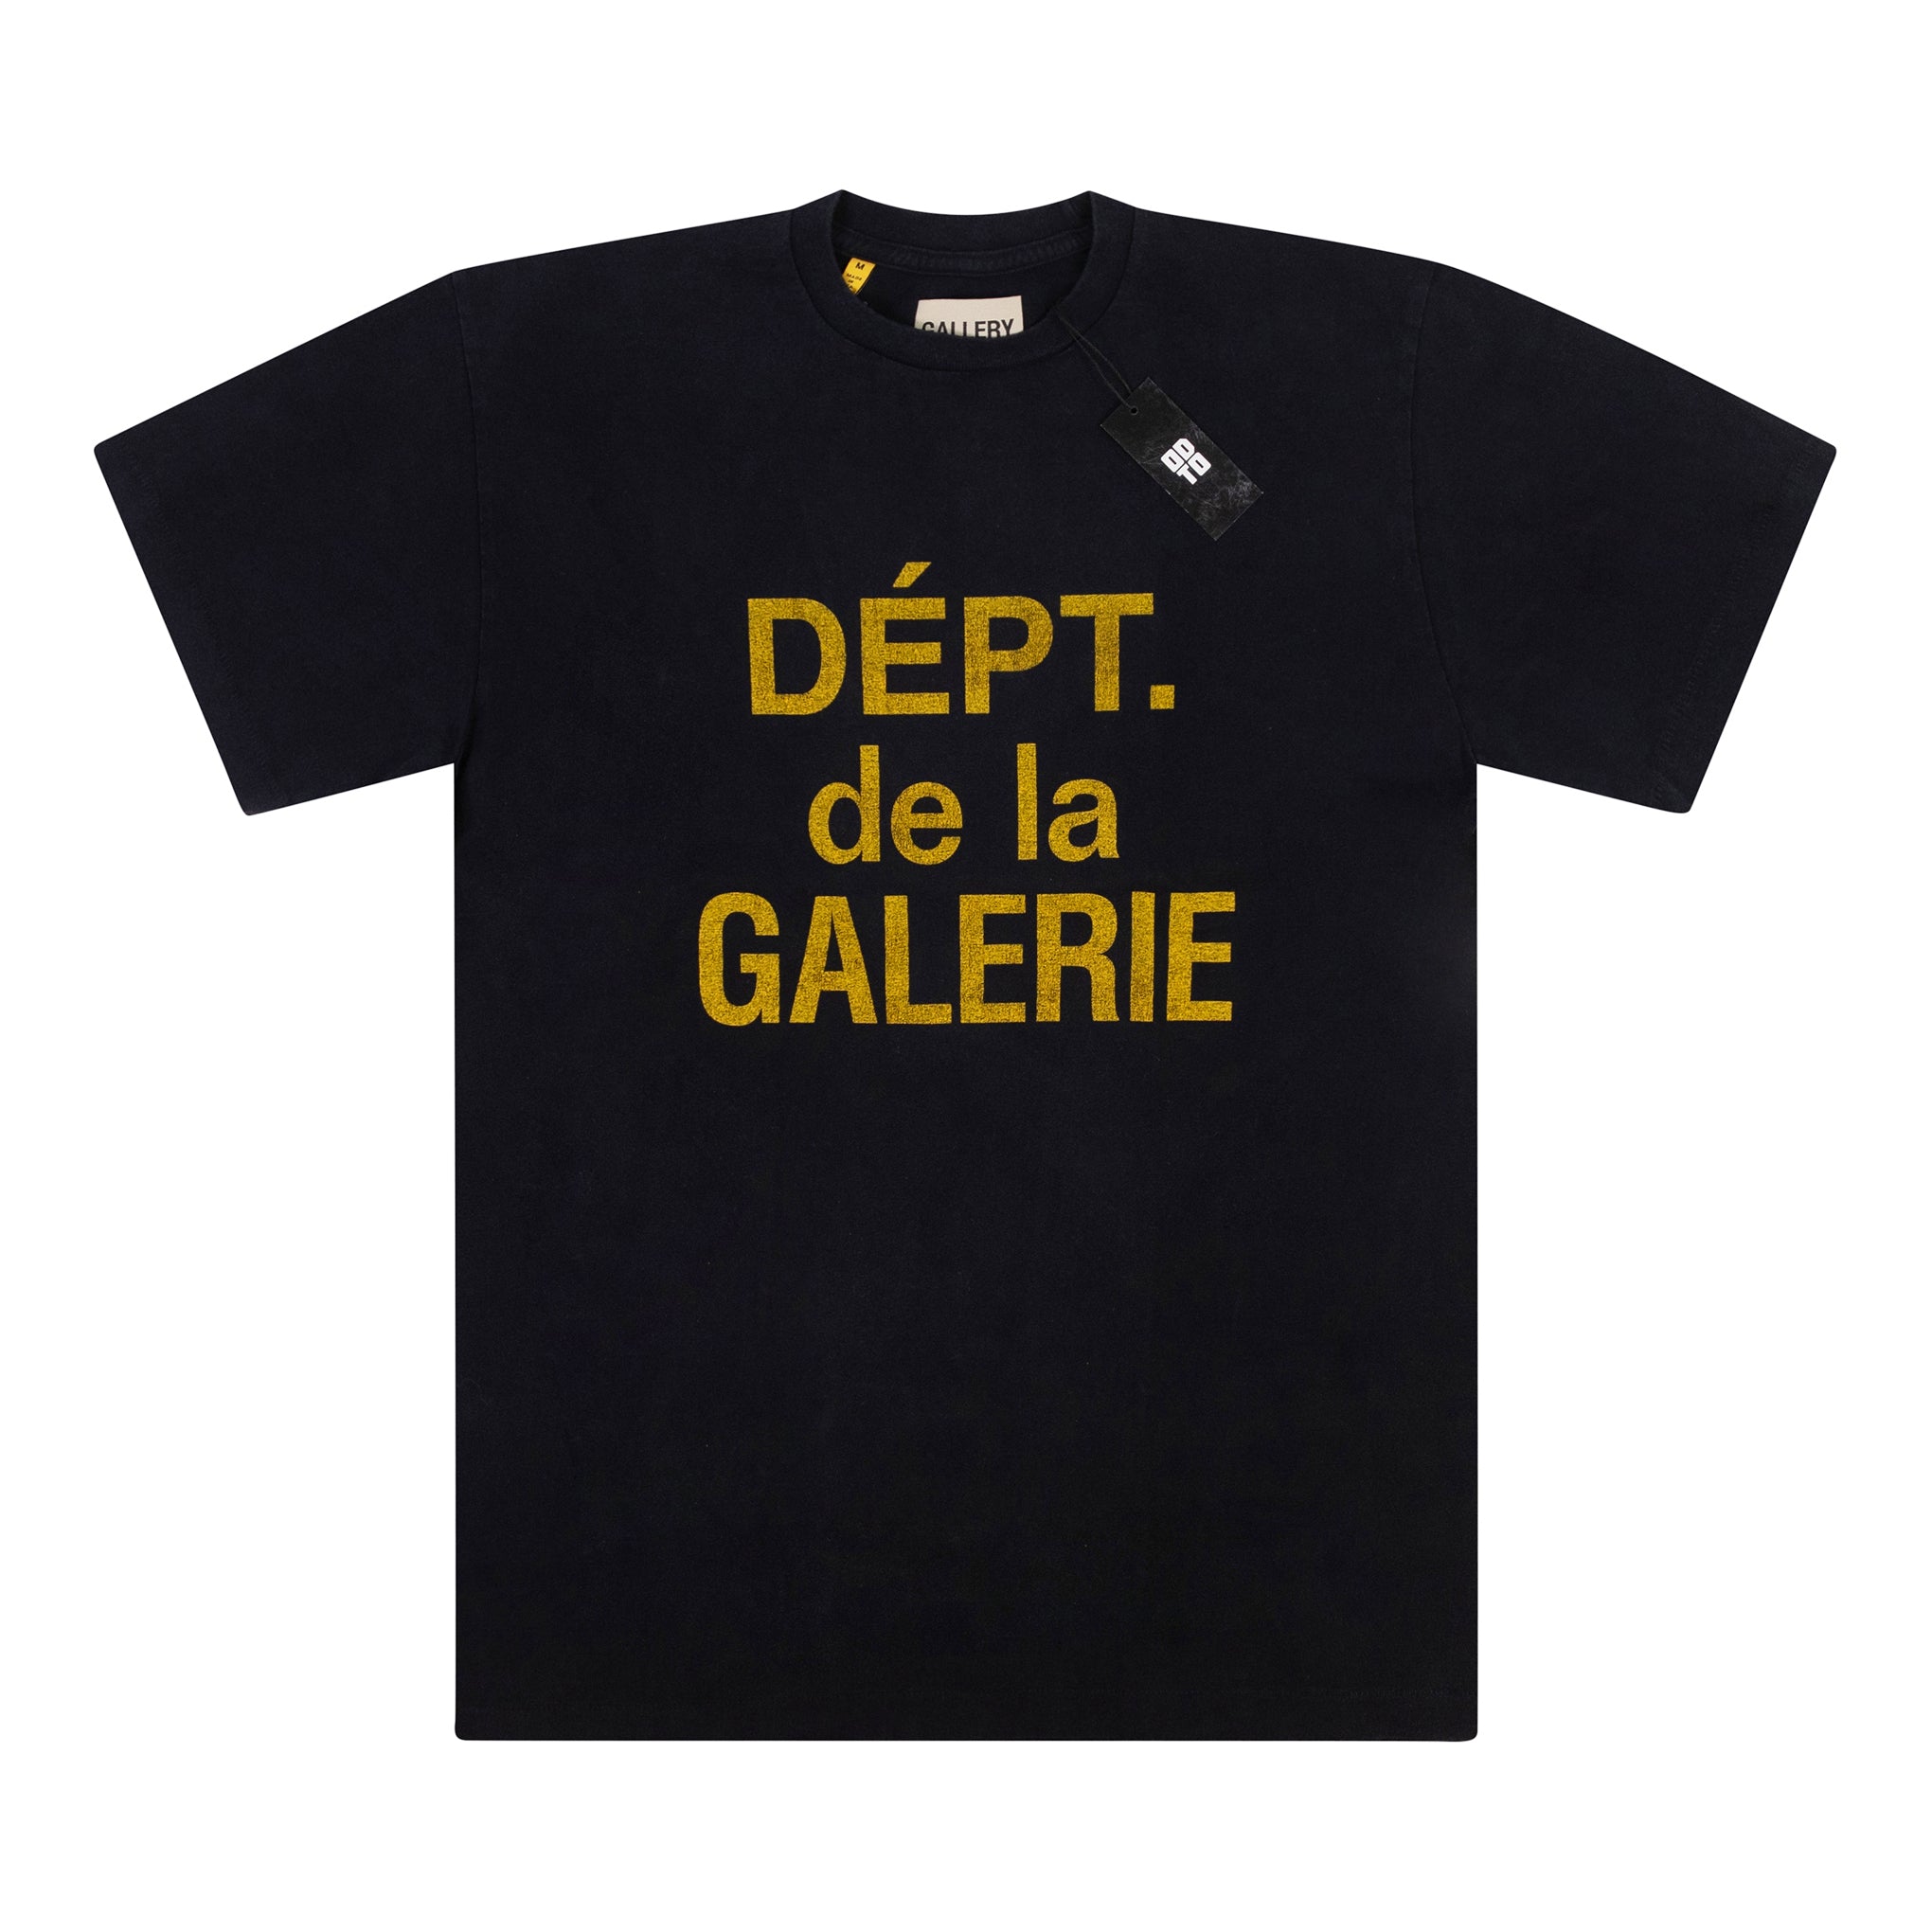 GALLERY DEPT. DEPT DE LA GALERIE CLASSIC TEE BLACK